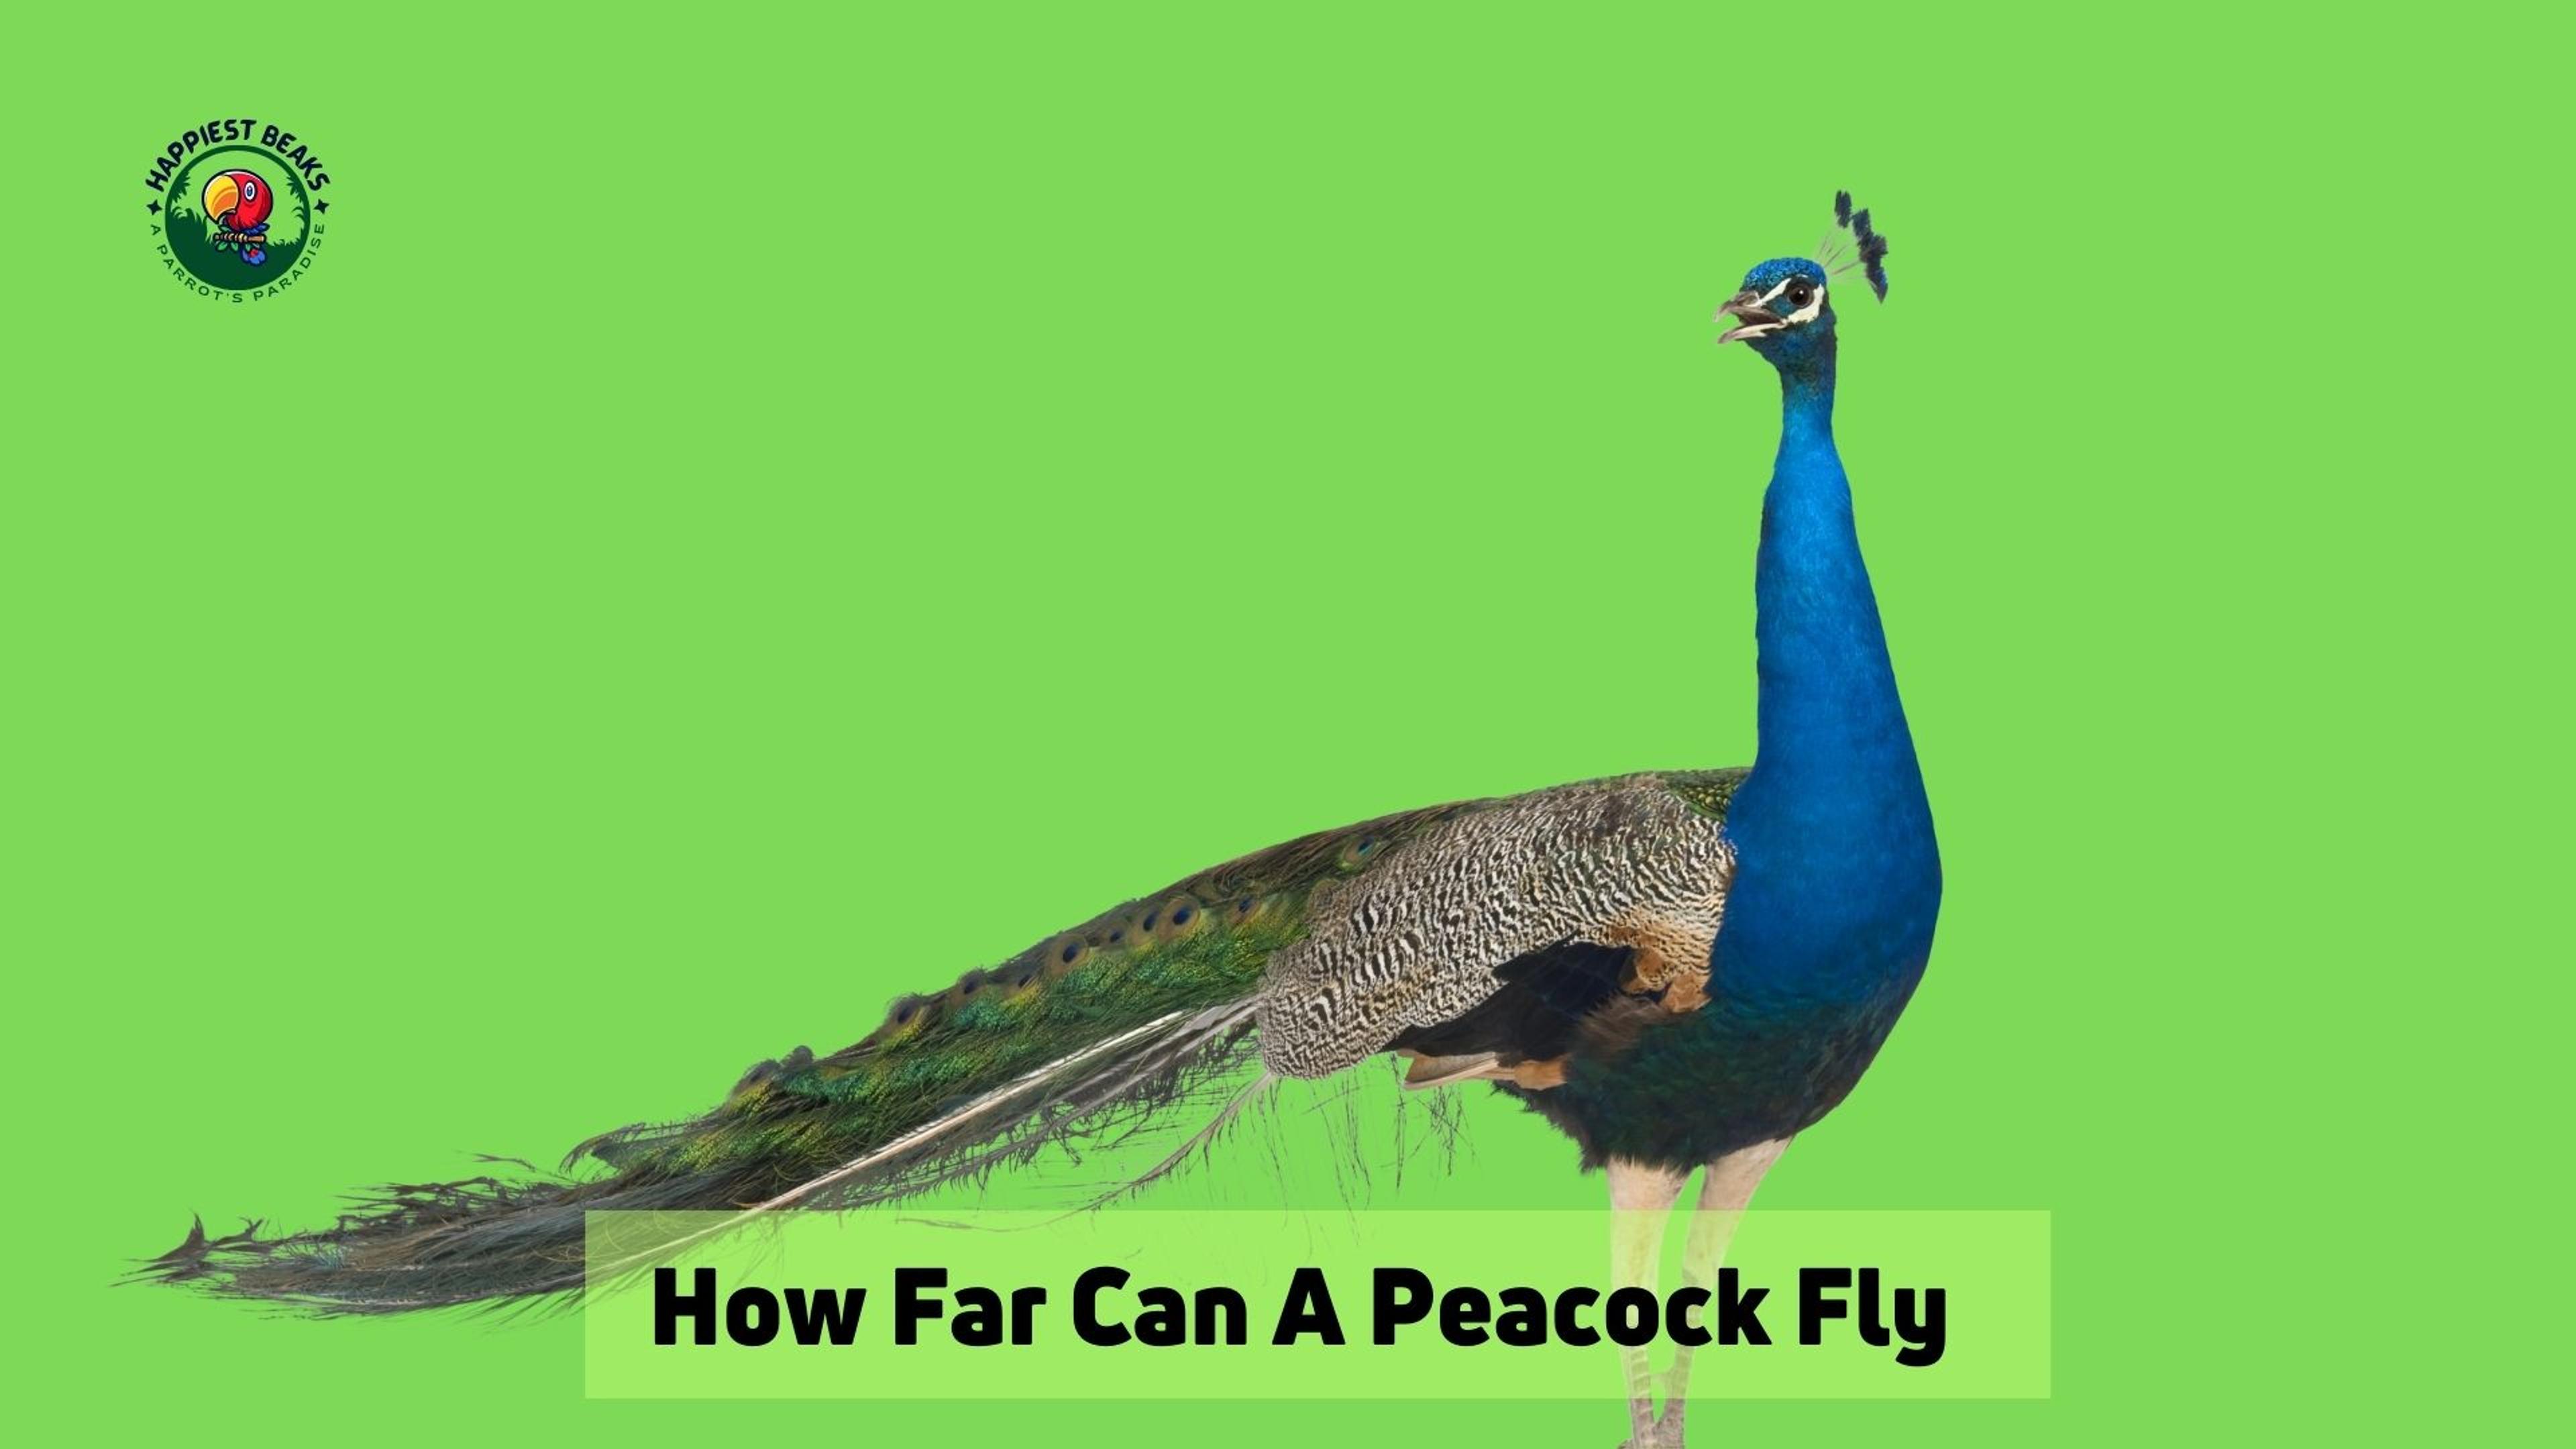 How Far Can A Peacock Fly